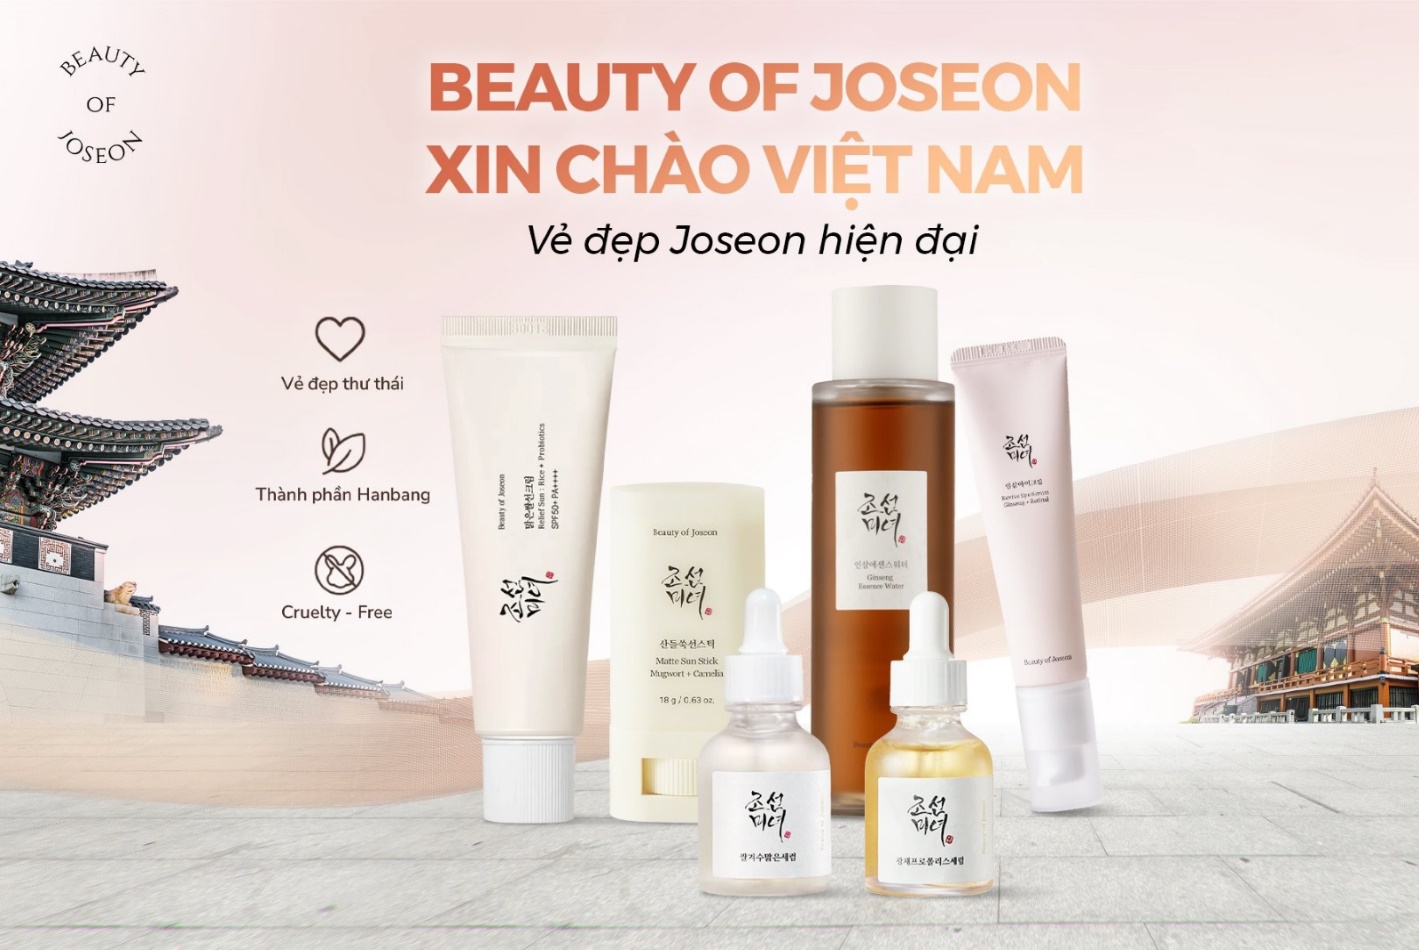 Beauty of Joseon: Thương hiệu mỹ phẩm “Hanbang hiện đại” chính thức có mặt tại Việt Nam - Ảnh 1.